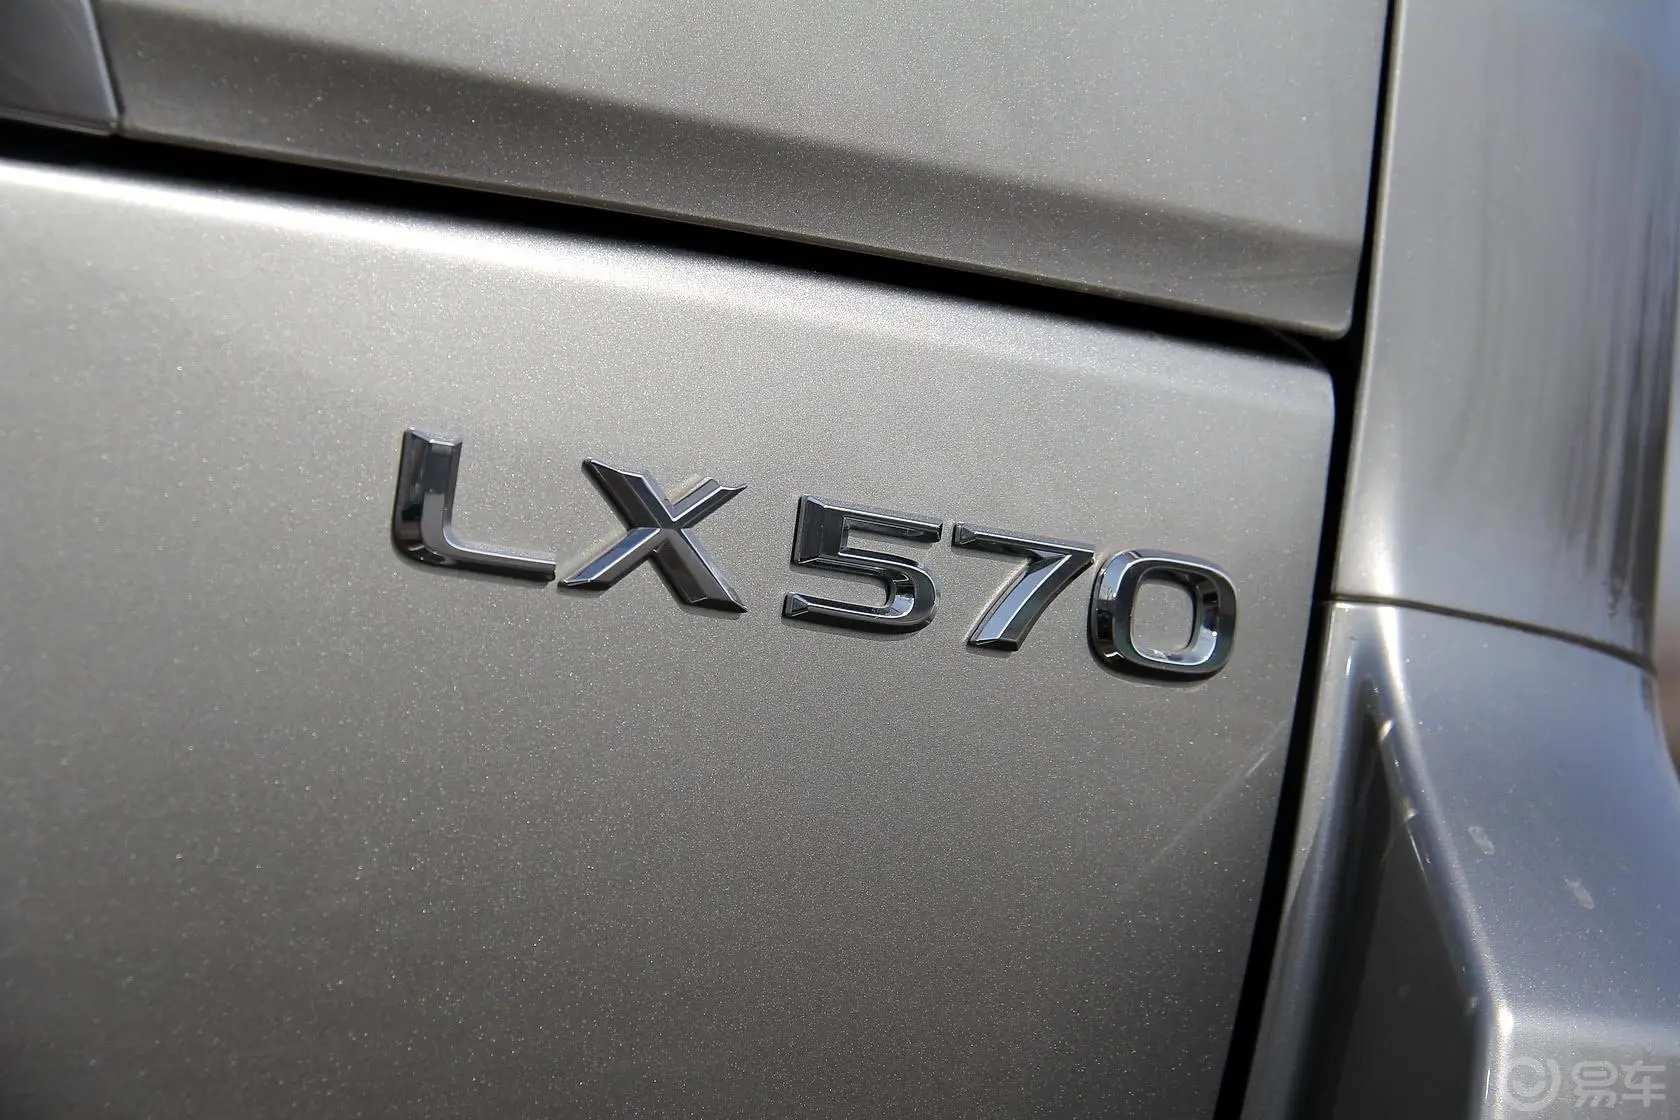 雷克萨斯LXLX 570 尊贵豪华版外观